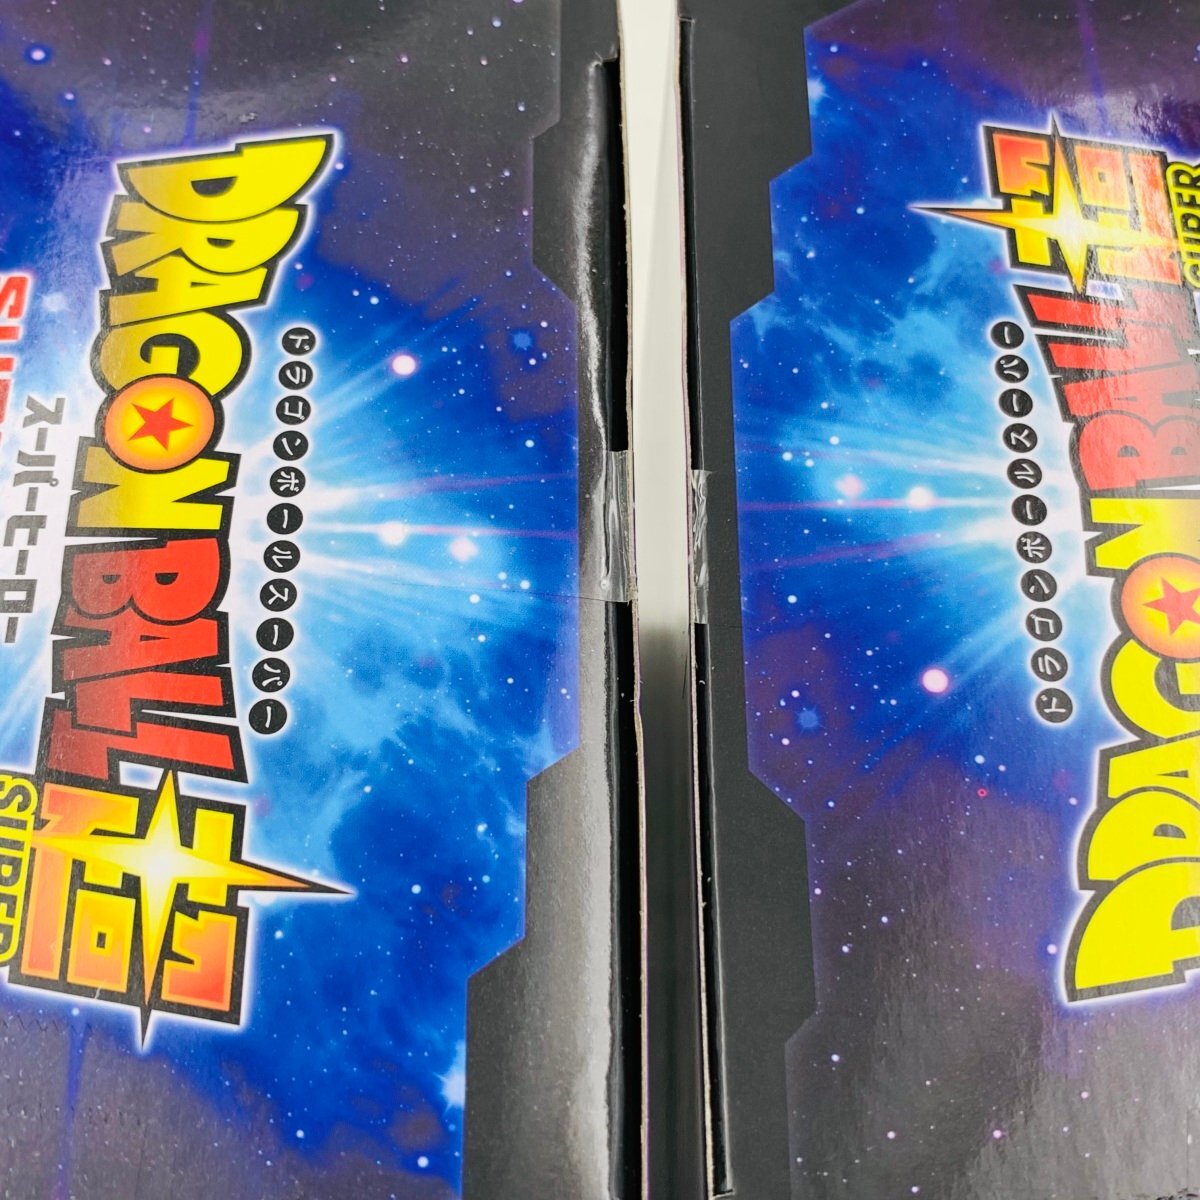 新品未開封 ドラゴンボール超 スーパーヒーロー DXF 超サイヤ人 孫悟飯 ピッコロ 潜在能力解放 2種セットの画像3